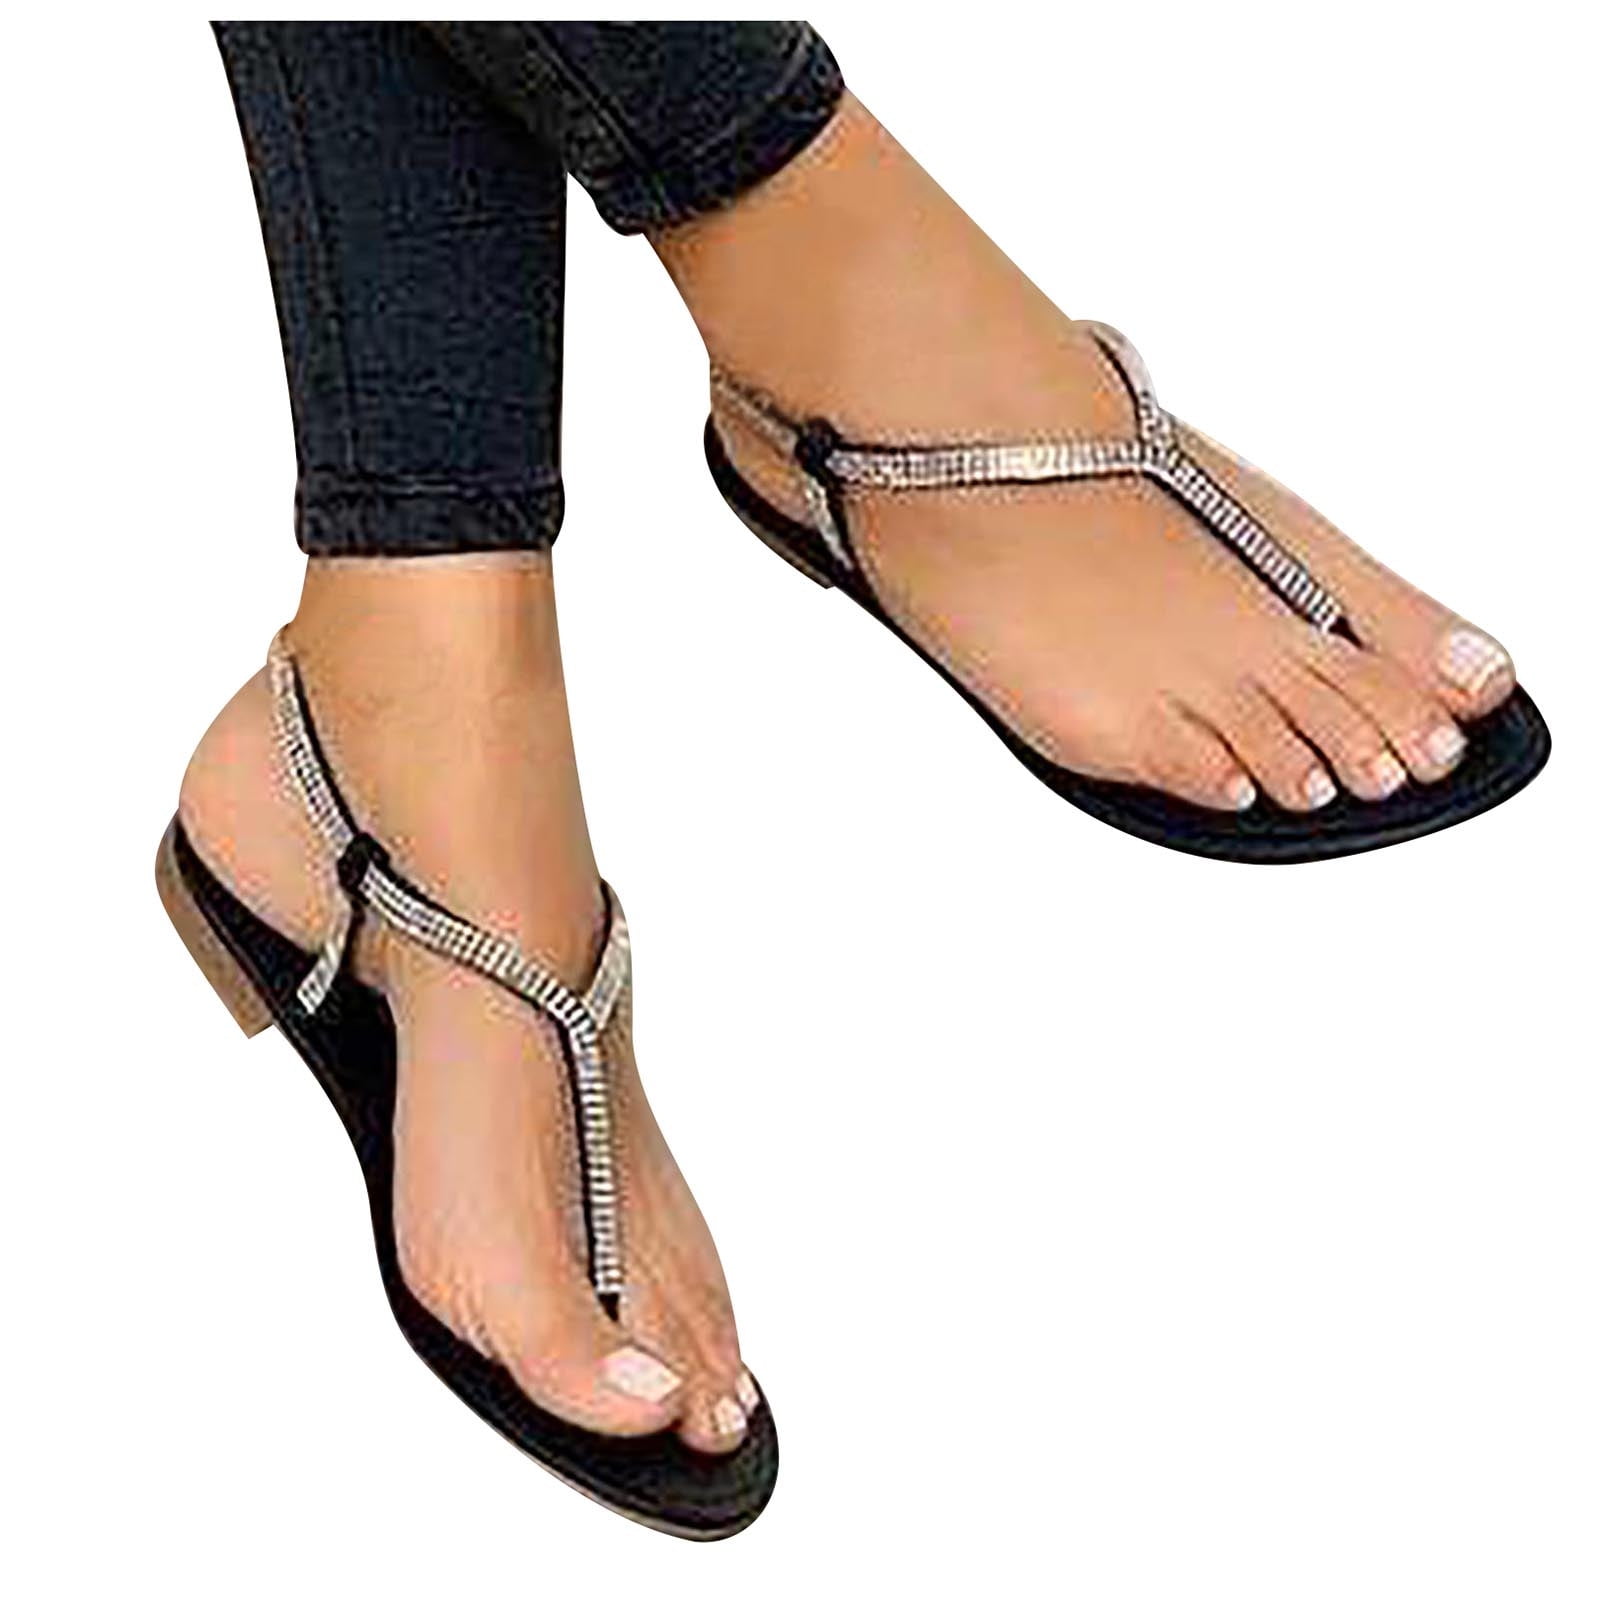 Cute Silver Sandals - T Strap Sandals - Flat Sandals - $19.00 - Lulus